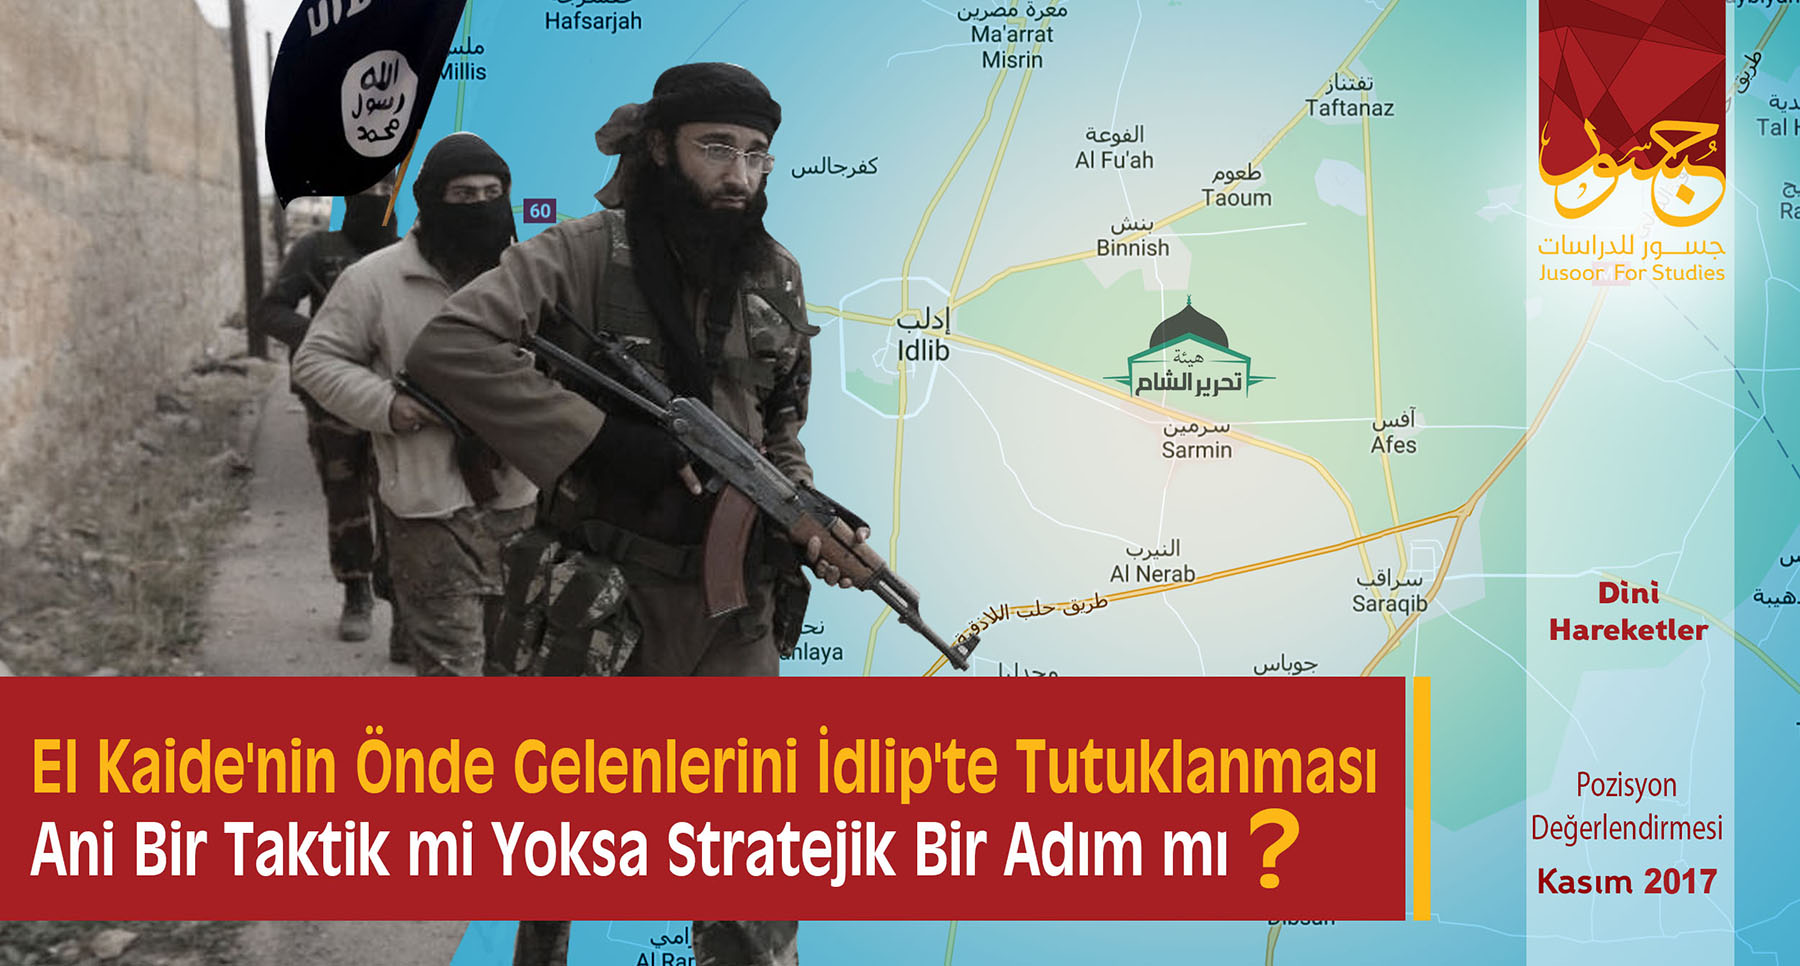  El Kaide'nin Önde Gelenlerini İdlip'te Tutuklanması Ani Bir Taktik mi Yoksa Stratejik Bir Adım mı?